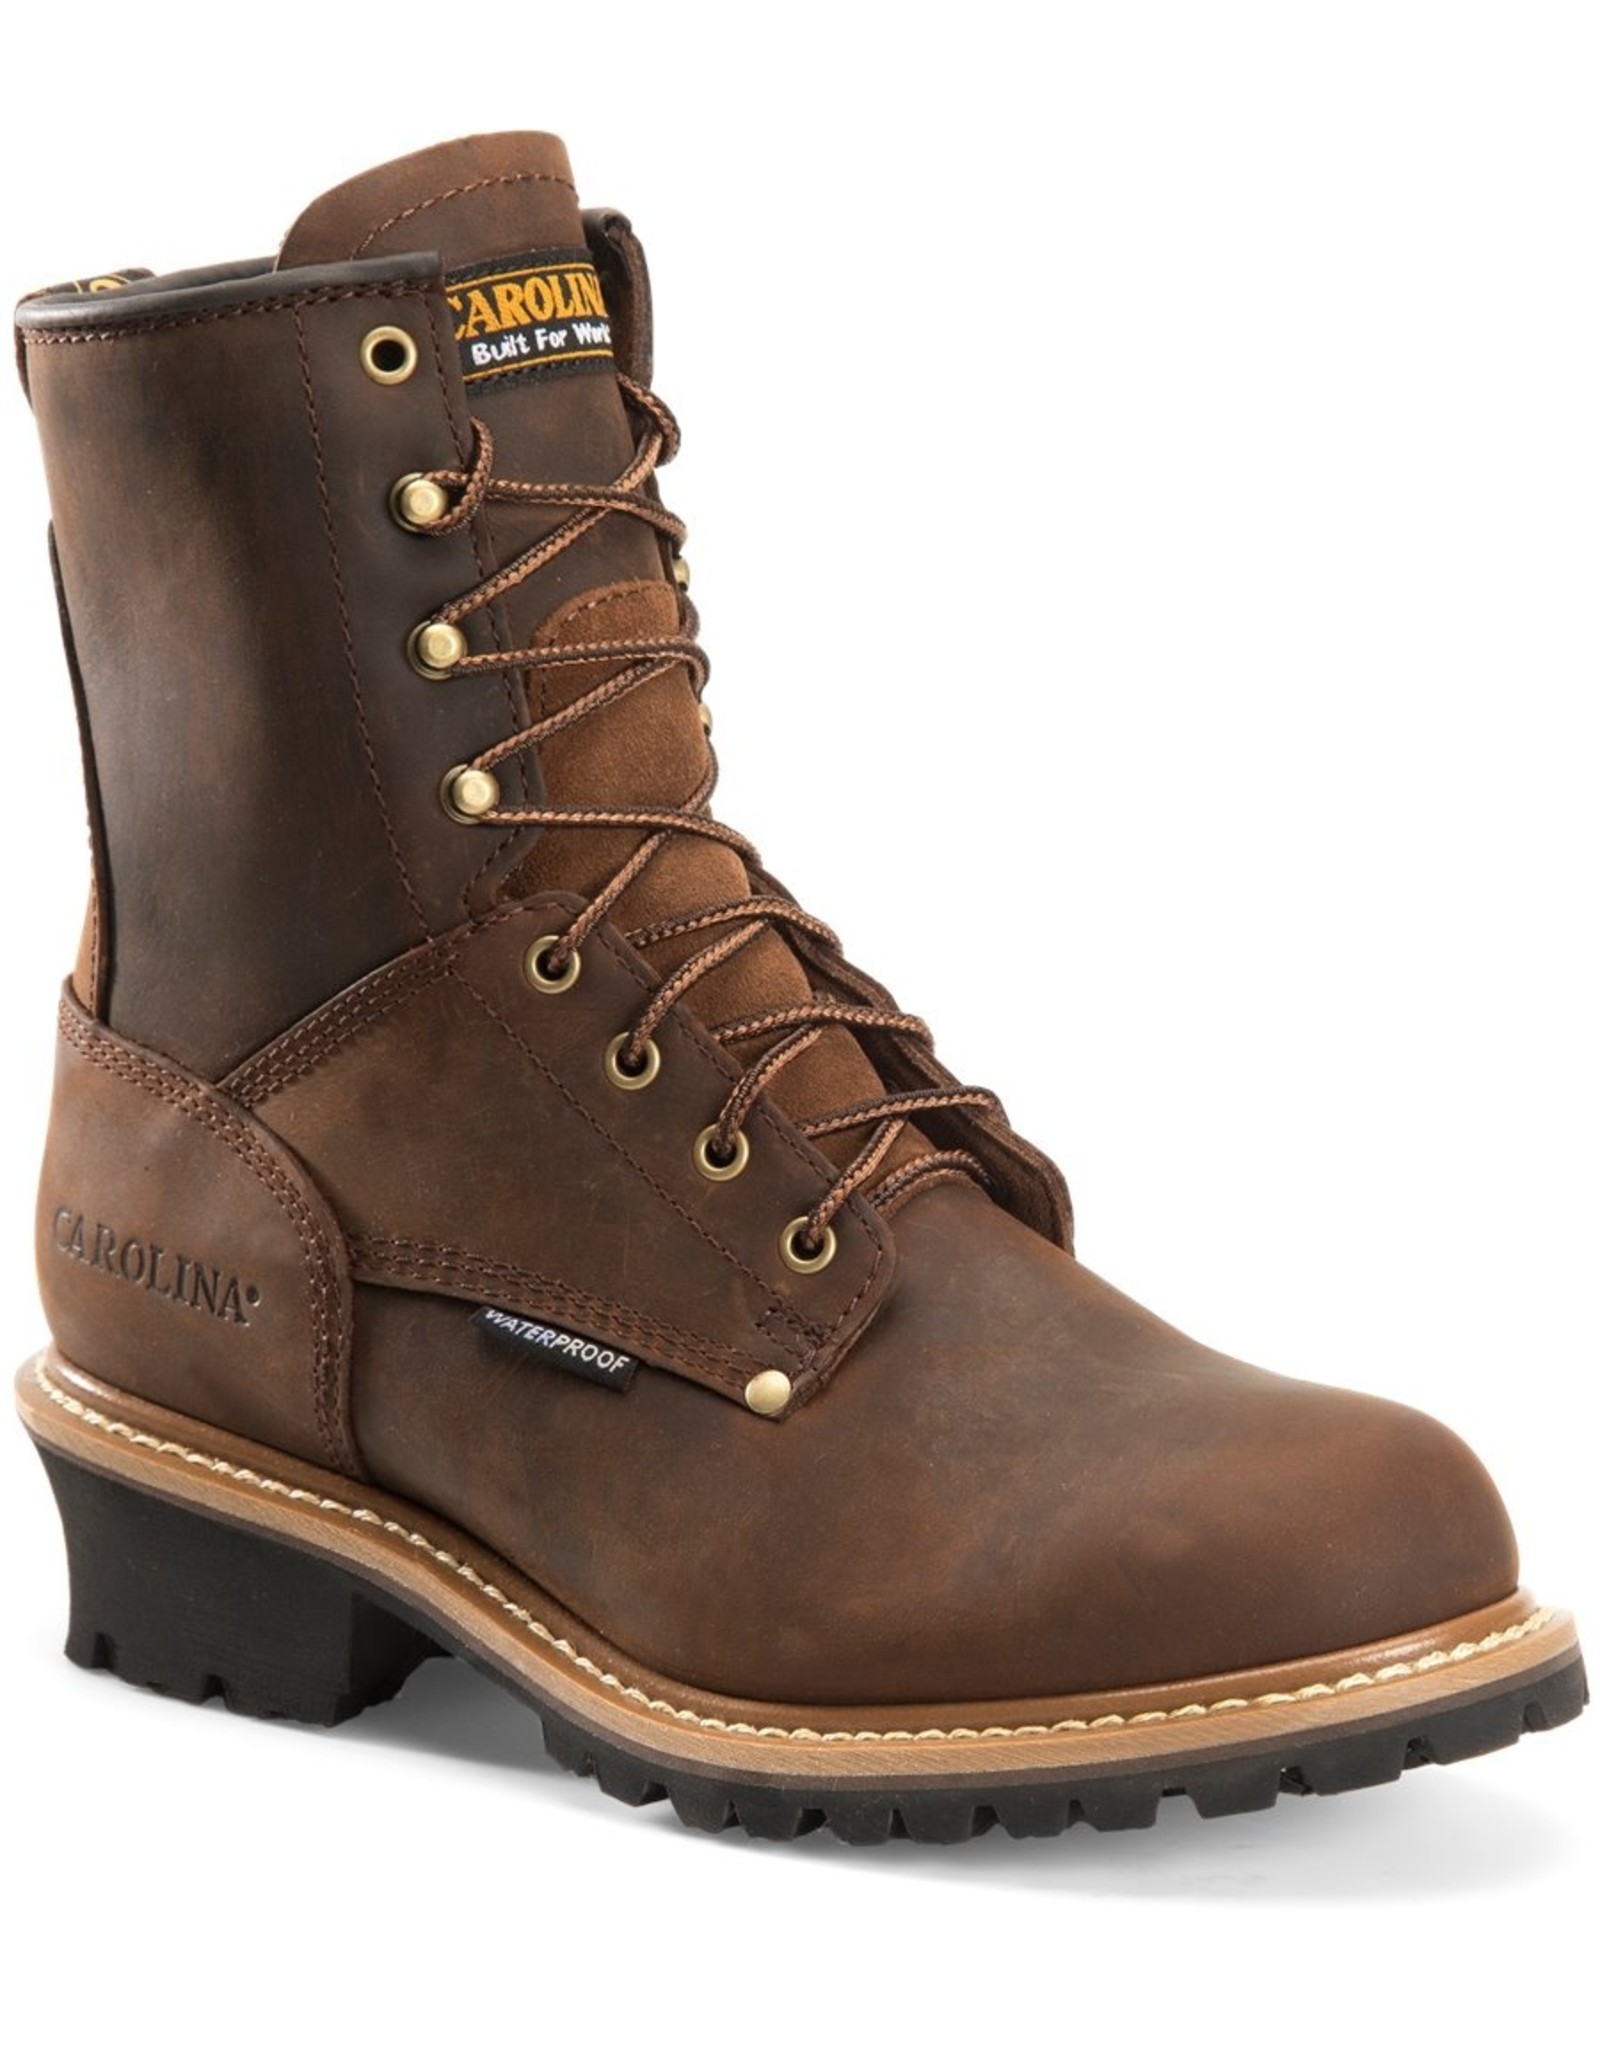 Boots-Men CAROLNA Elm Logger CA8821